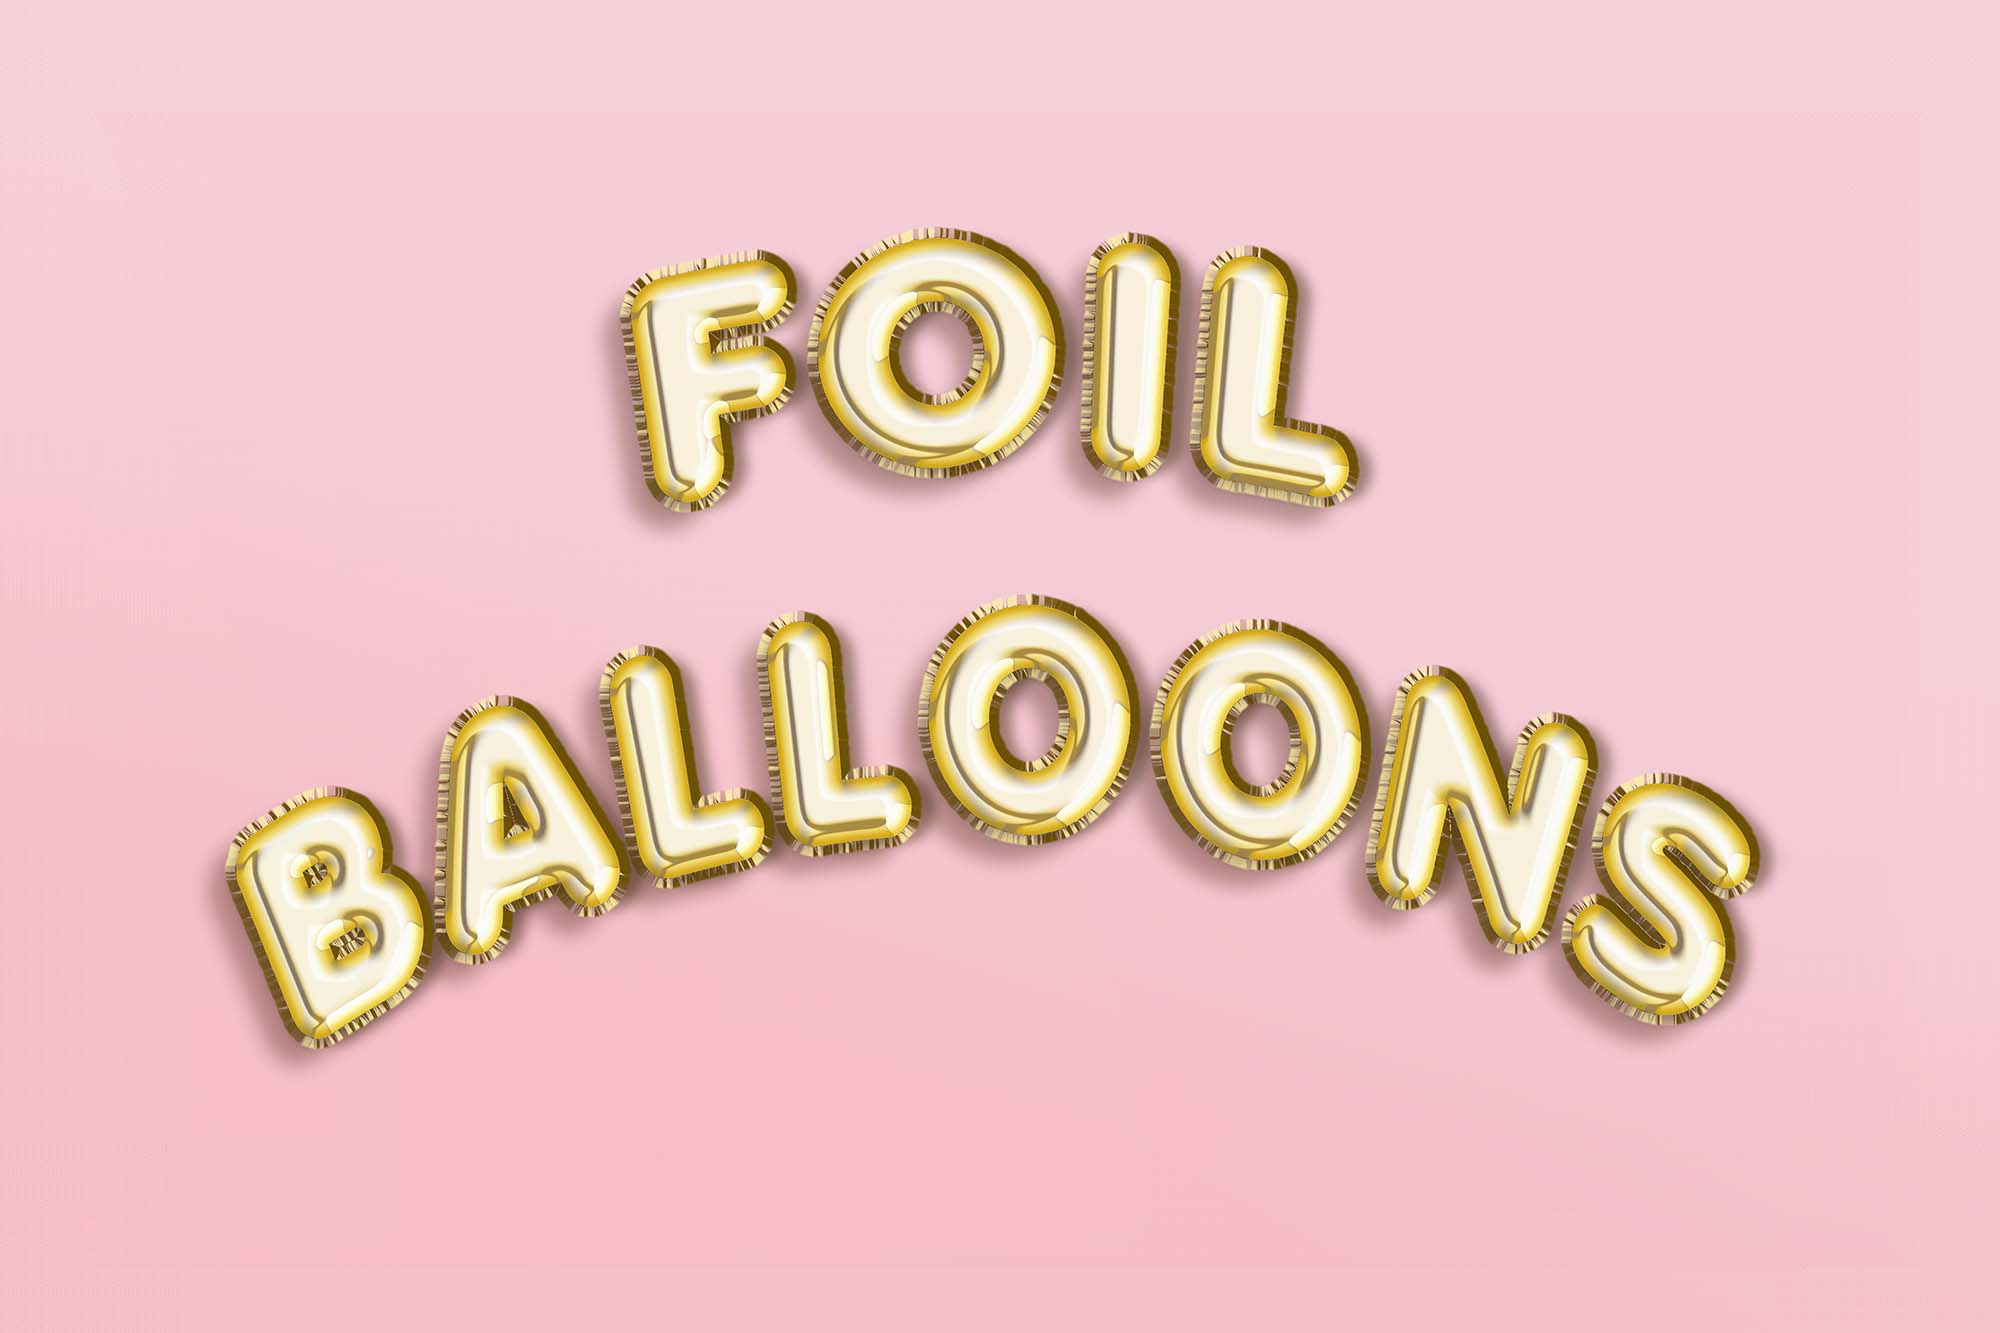 Foil Balloon Text Effect